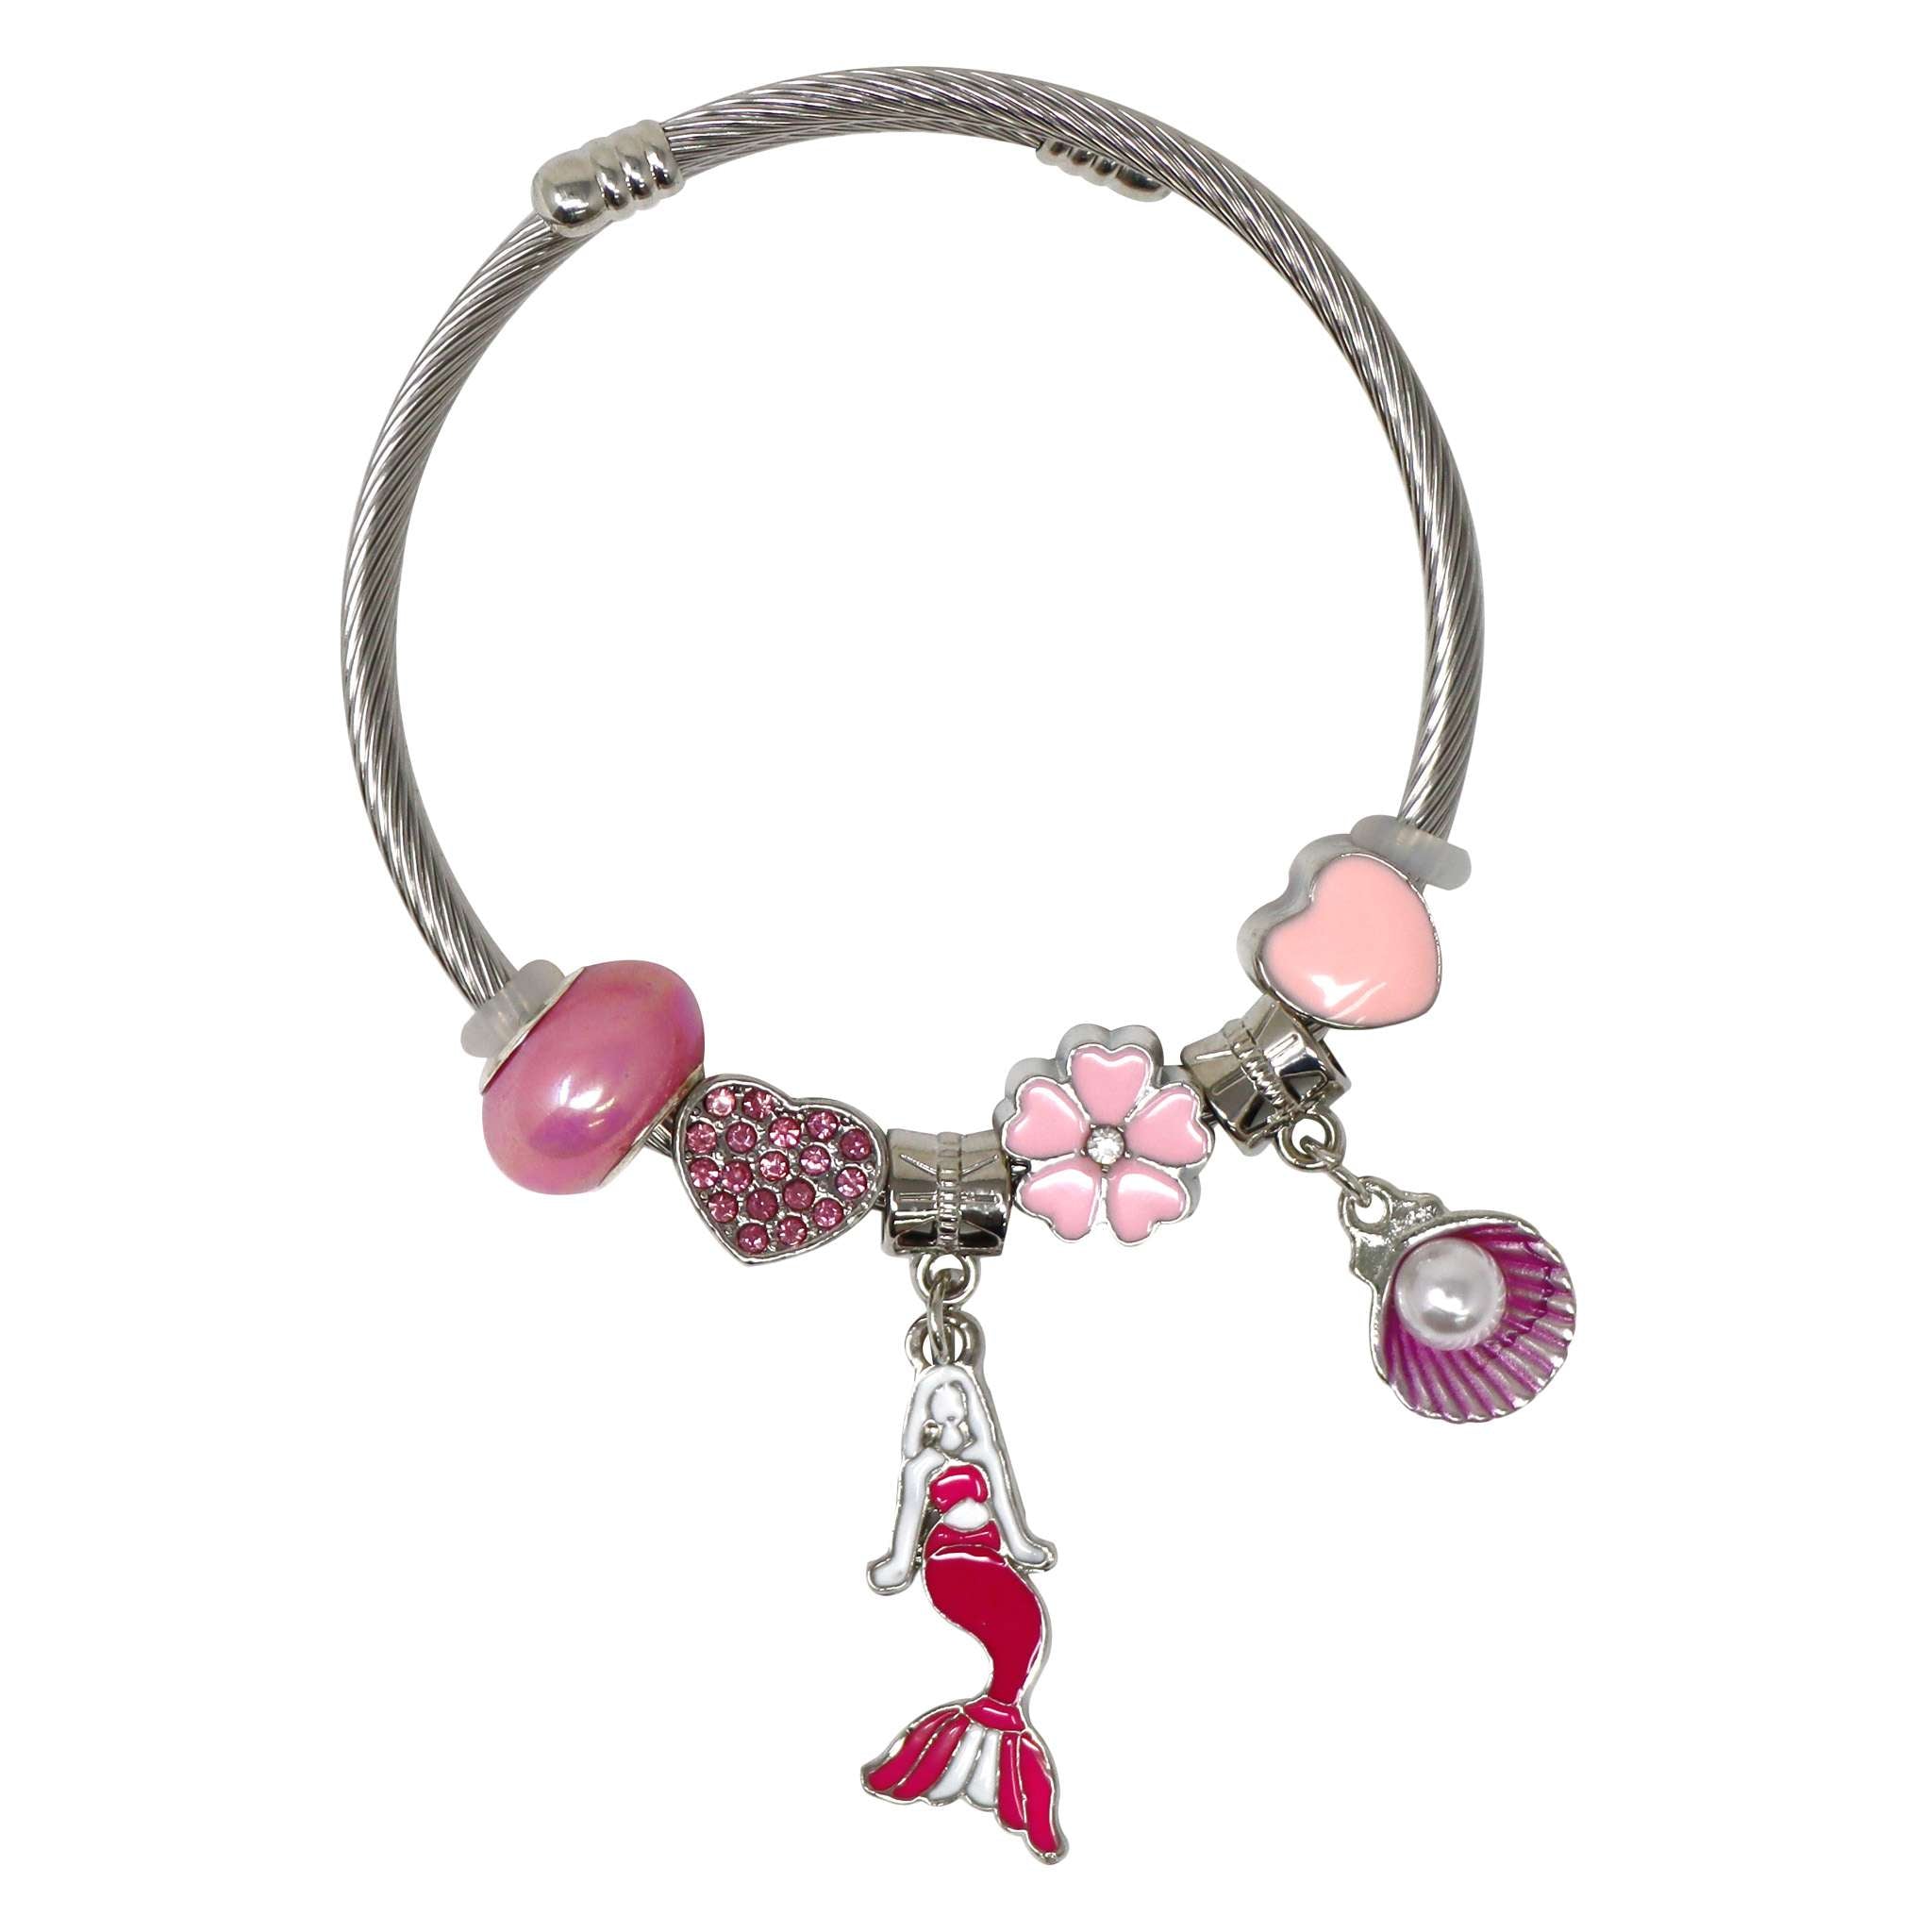 Disney Cinderella Charm Bracelet Watch, Battery Required | eBay